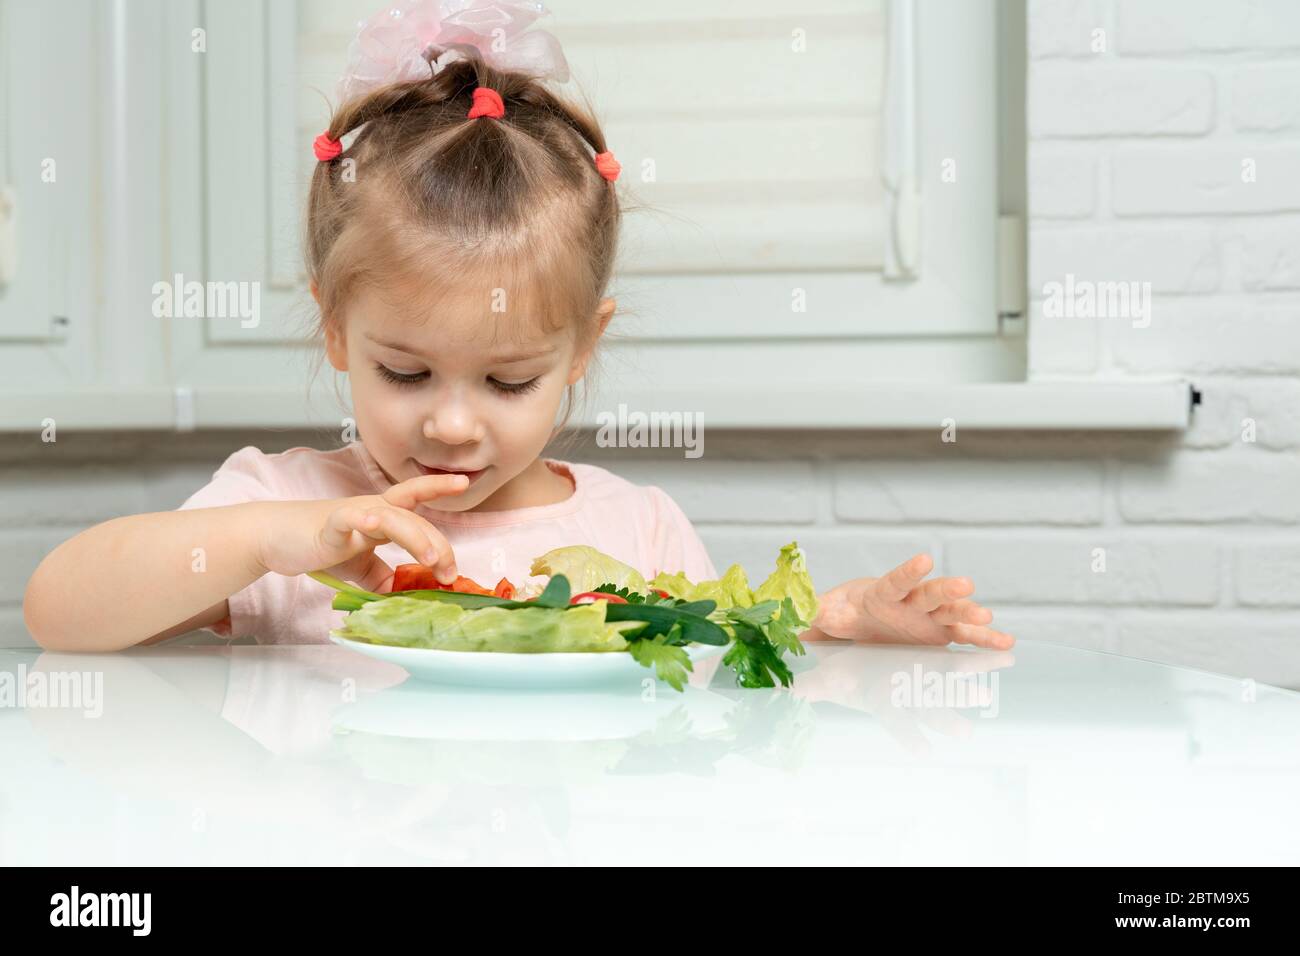 la ragazza di 4 anni si siede in cucina al tavolo e mangia le verdure, prende un pomodoro tritato da un piatto. regole nutrizionali prescolare Foto Stock